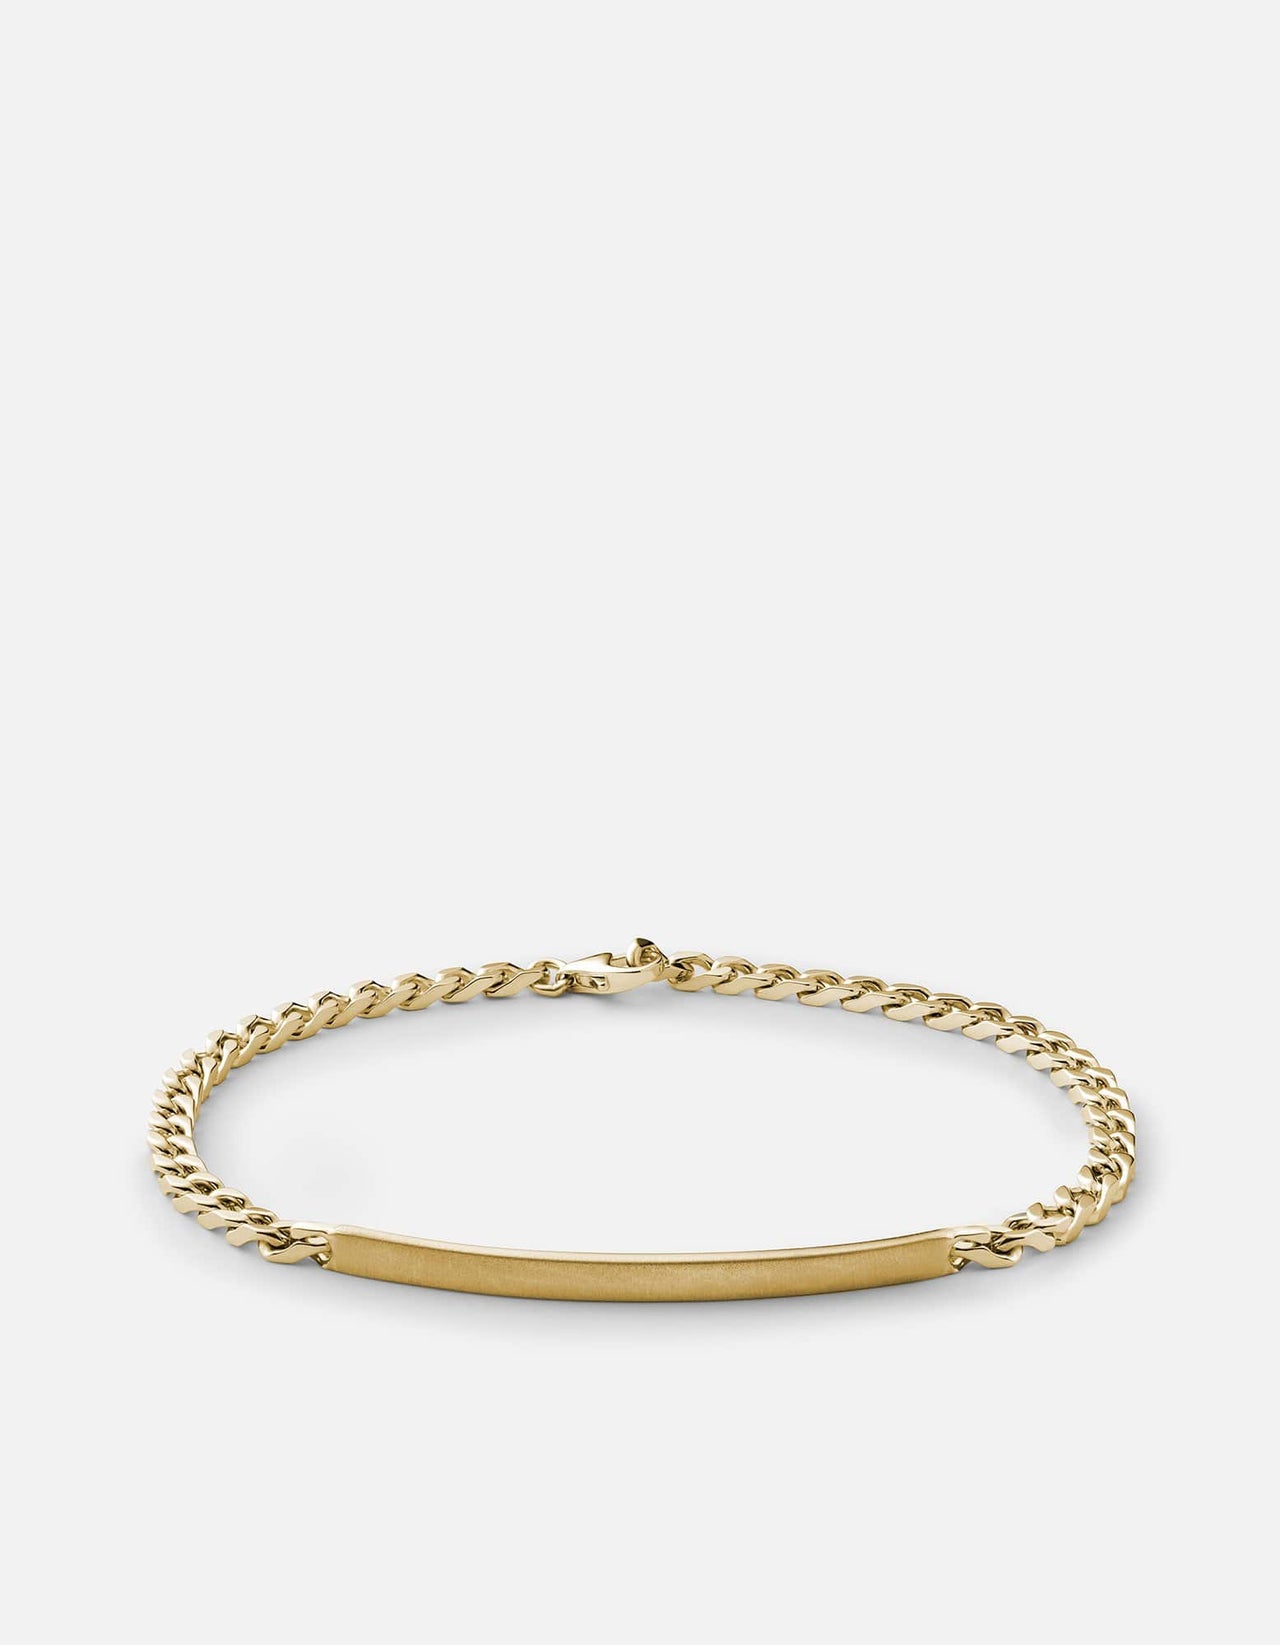 Exquisite Posh S Link Men's 22k Gold Bracelet – Andaaz Jewelers